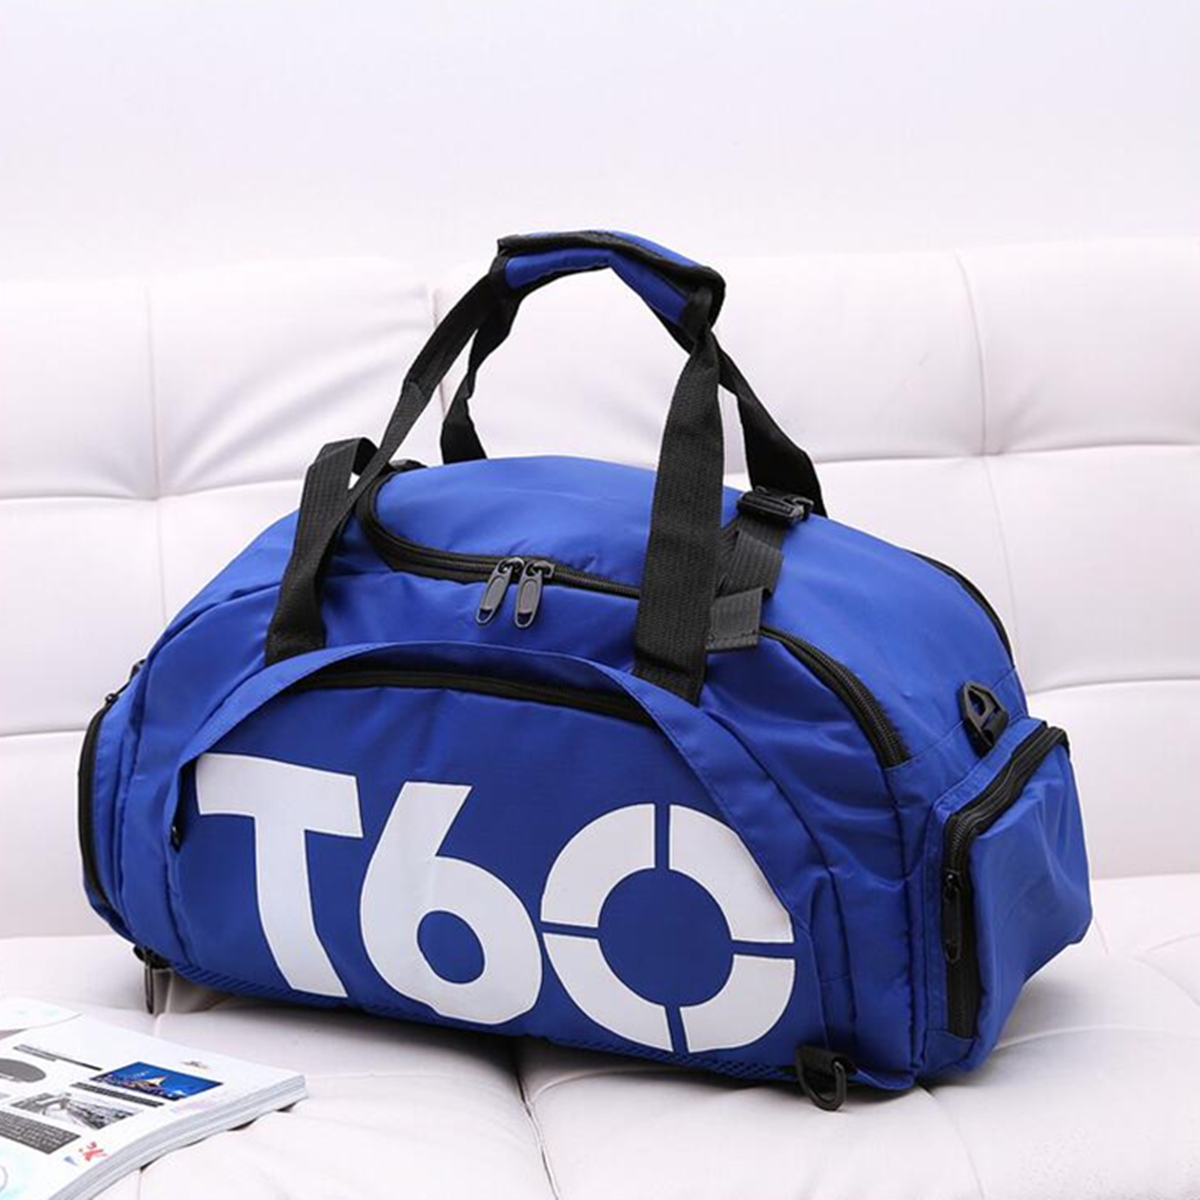 17L-Sports-Gym-Backpack-Fitness-Outdoor-Camping-Travel-Shoulder-Bag-Handbag-Shoe-Bag-1352205-5